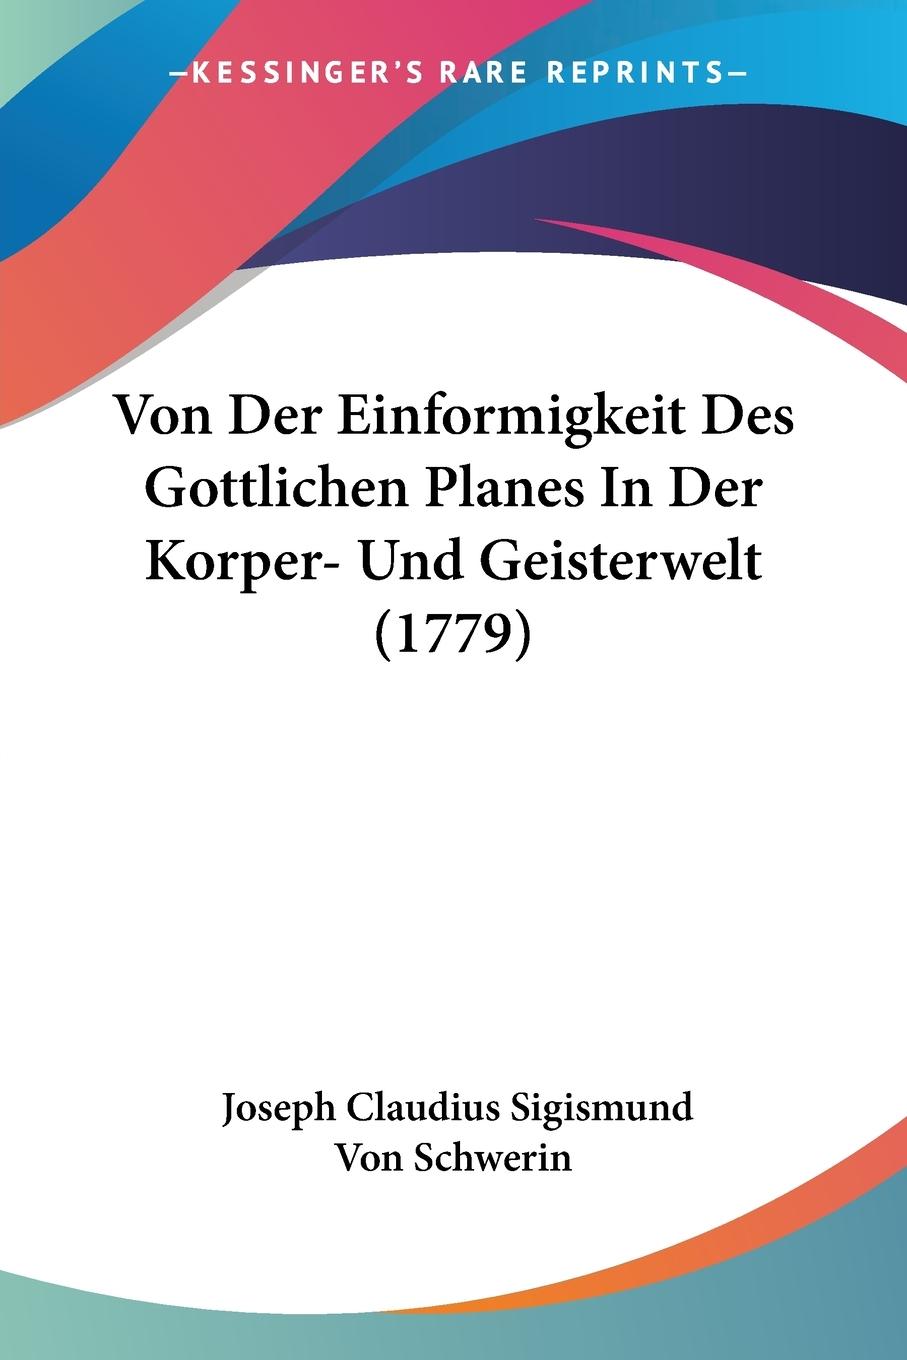 Von Der Einformigkeit Des Gottlichen Planes In Der Korper- Und Geisterwelt (1779) - Schwerin, Joseph Claudius Sigismund Von